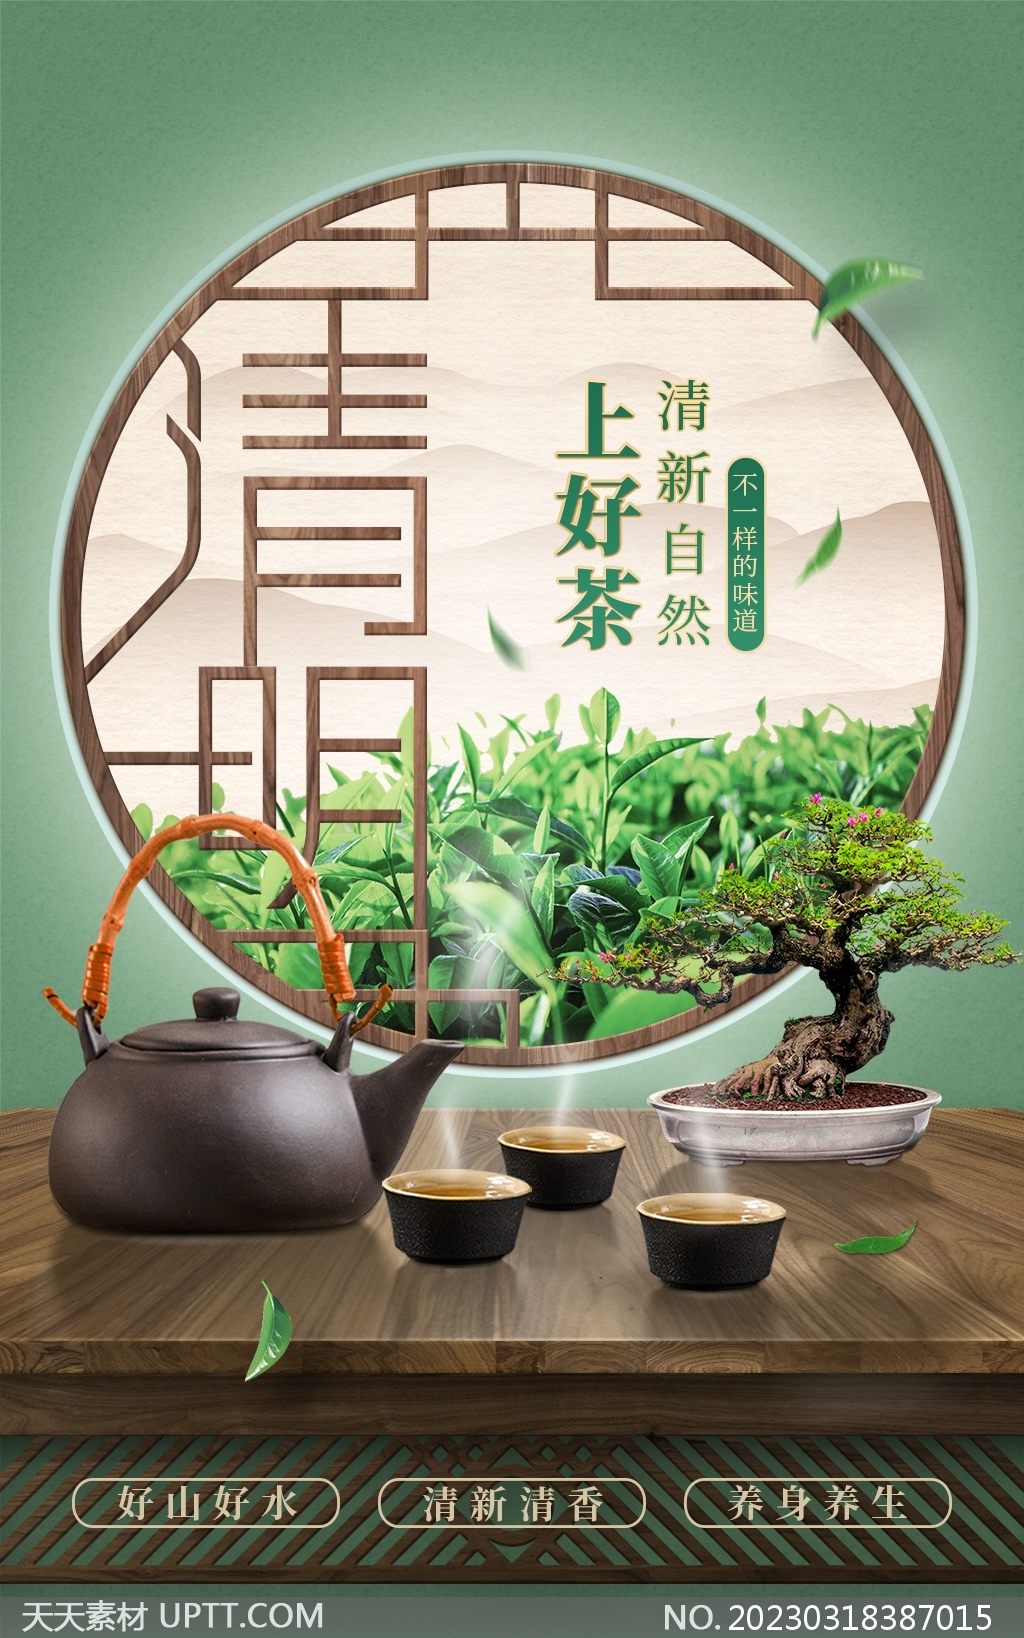 清明节上好茶绿色古典中国风海报素材-天天素材库设计素材 image